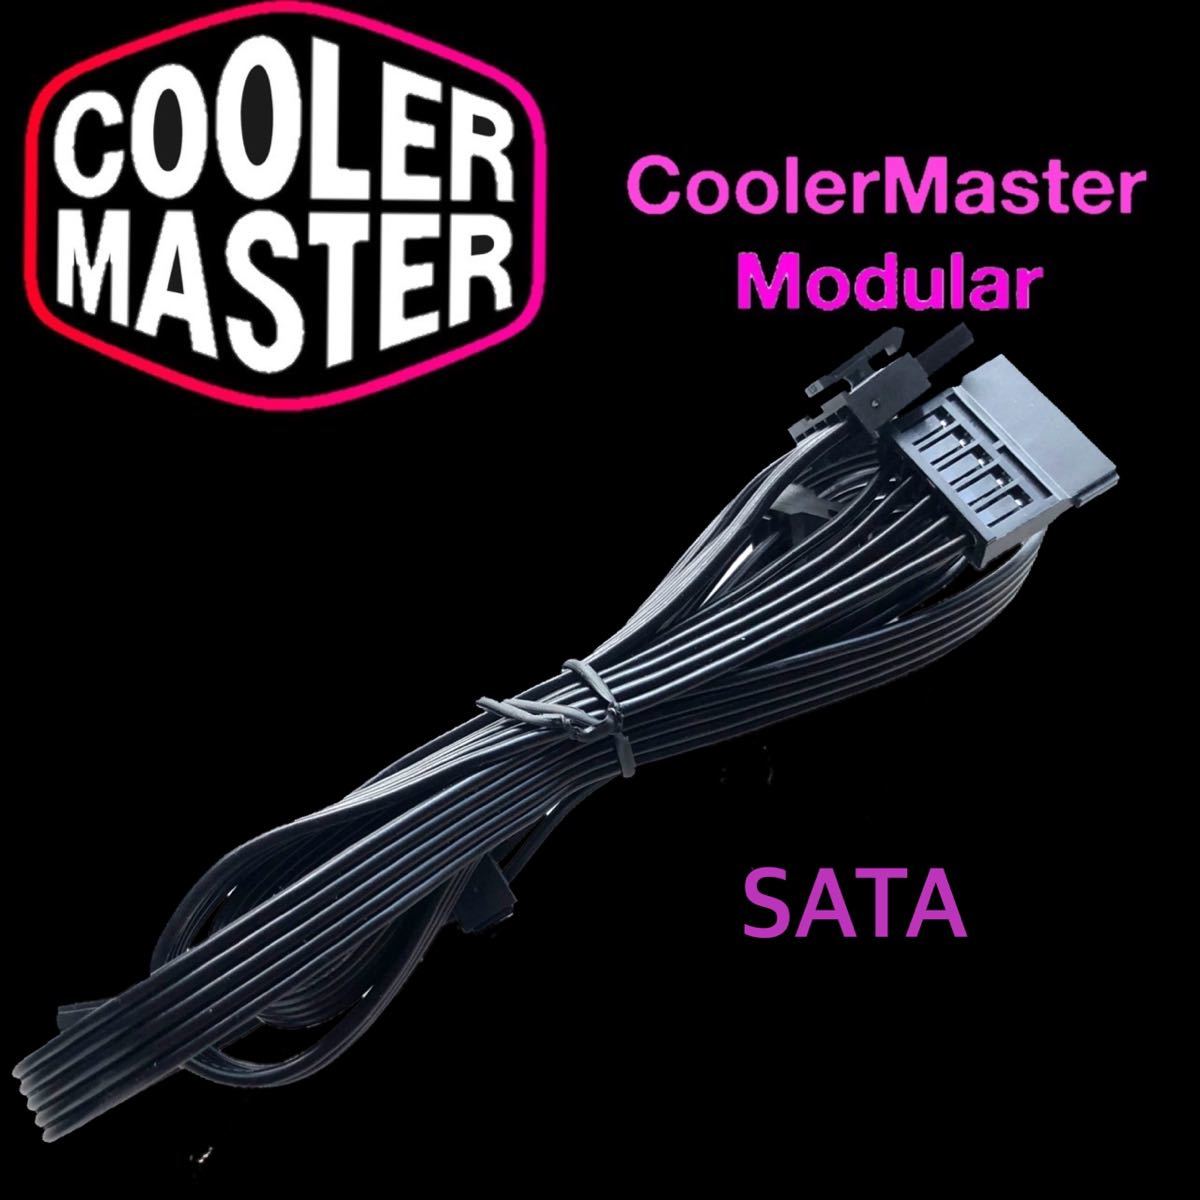 【正規品】CoolerMaster Vseries ATX電源 SATA 4口 ケーブル 5PIN プラグイン ATX電源 cooler master クーラーマスター.